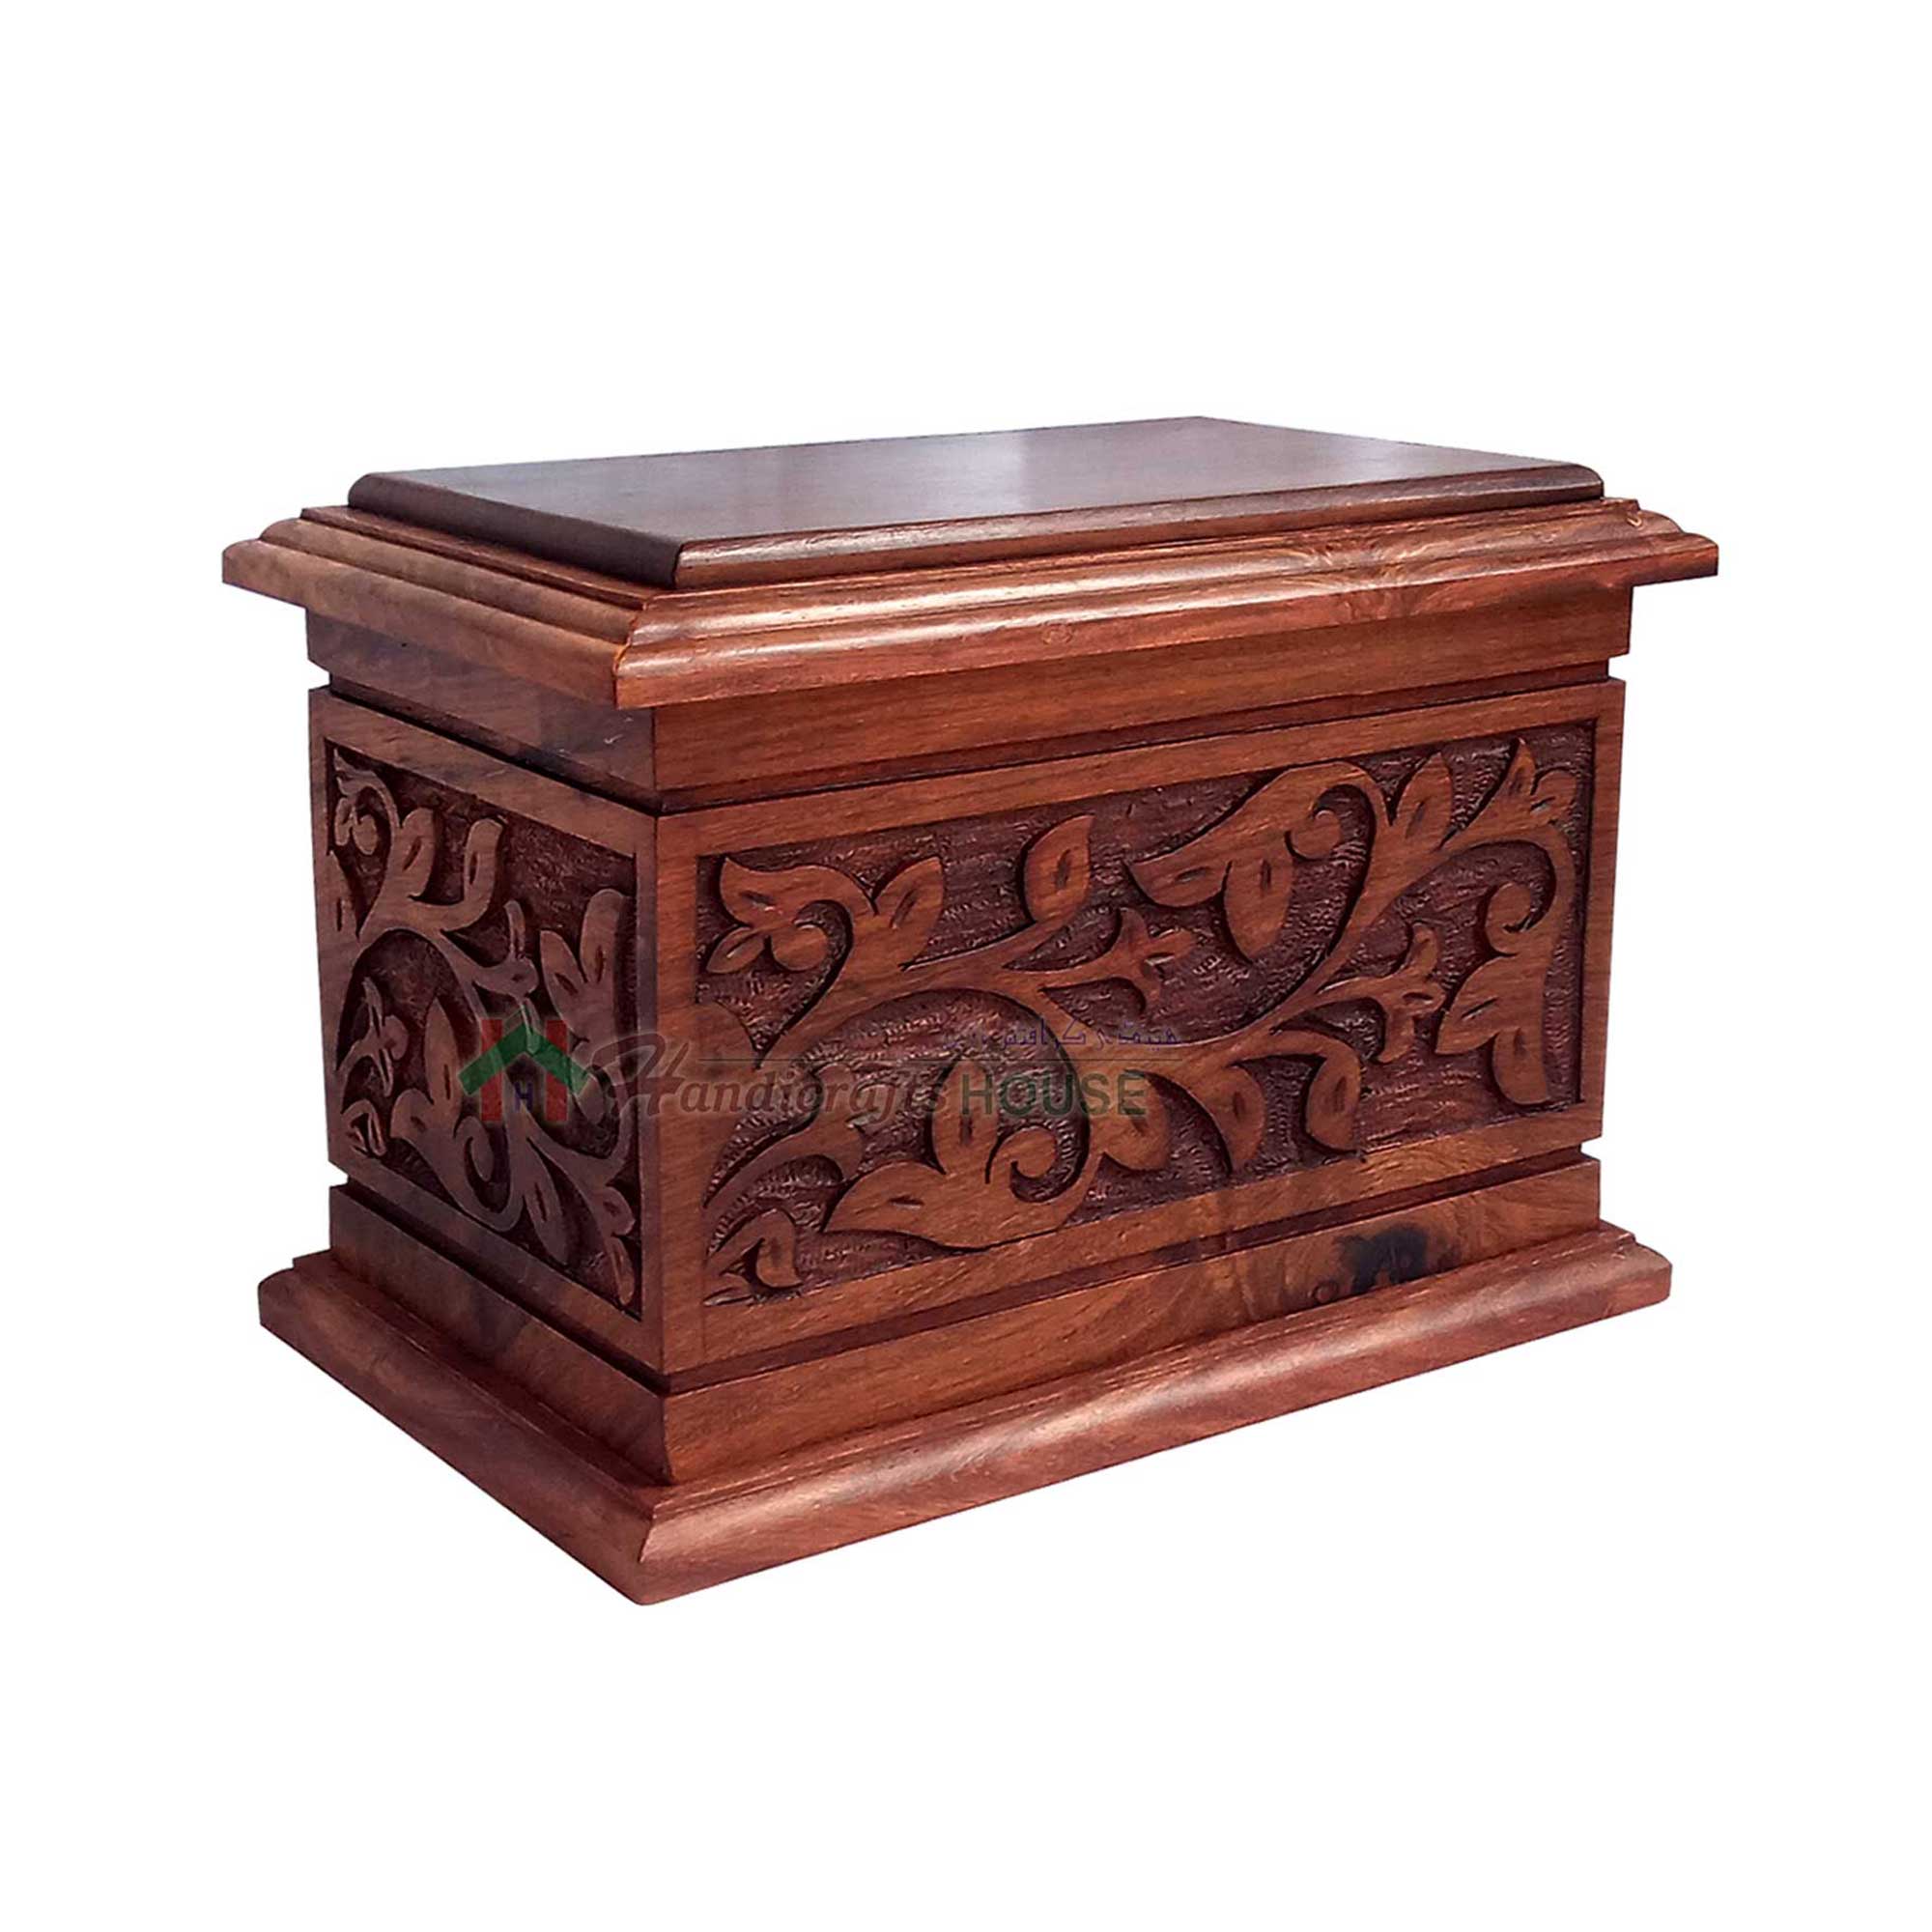 Extra Large Wood Casket Cremation Urn Adult Urn For Ashes Wooden Memorial Urn 